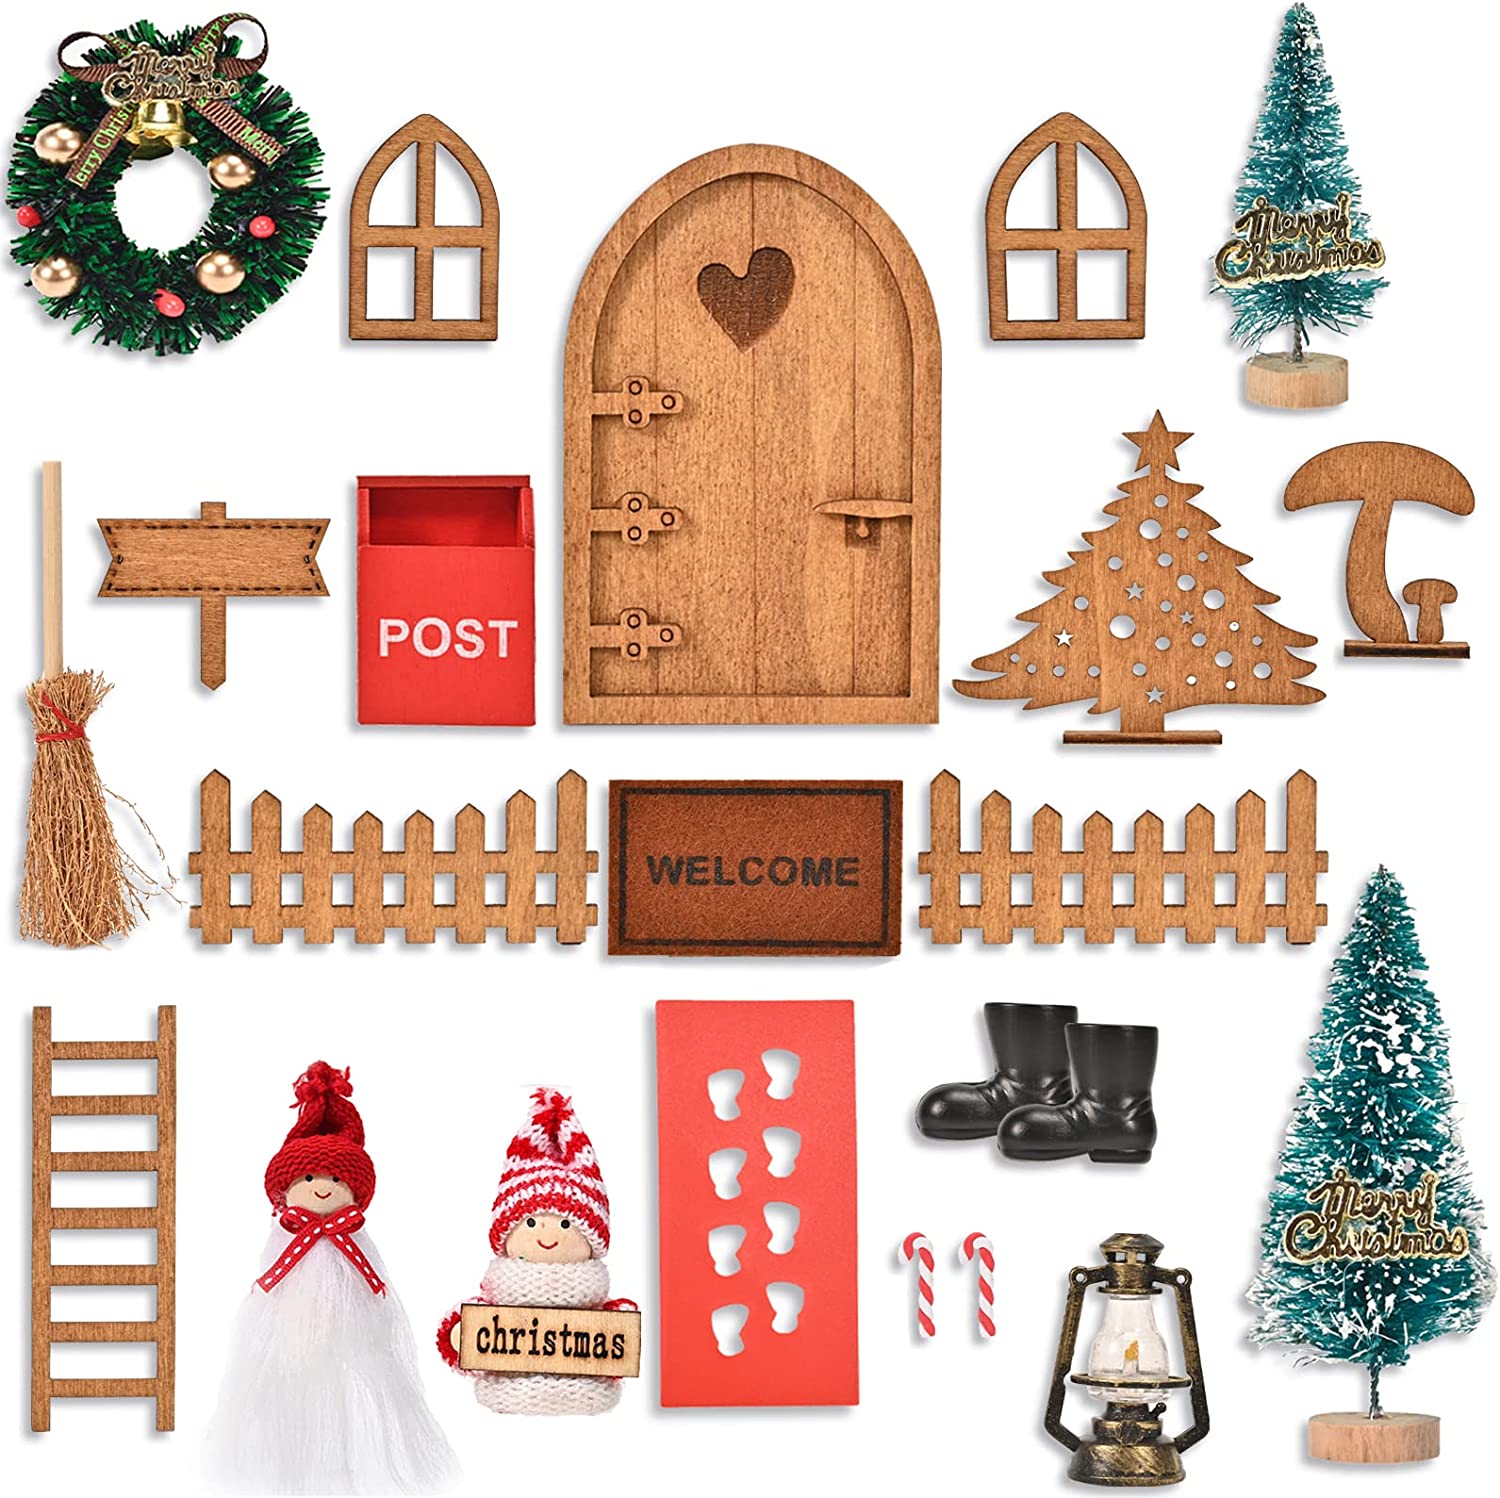 
                                    
                                Addobbi di Natale, le idee più belle e originali per decorare la casa